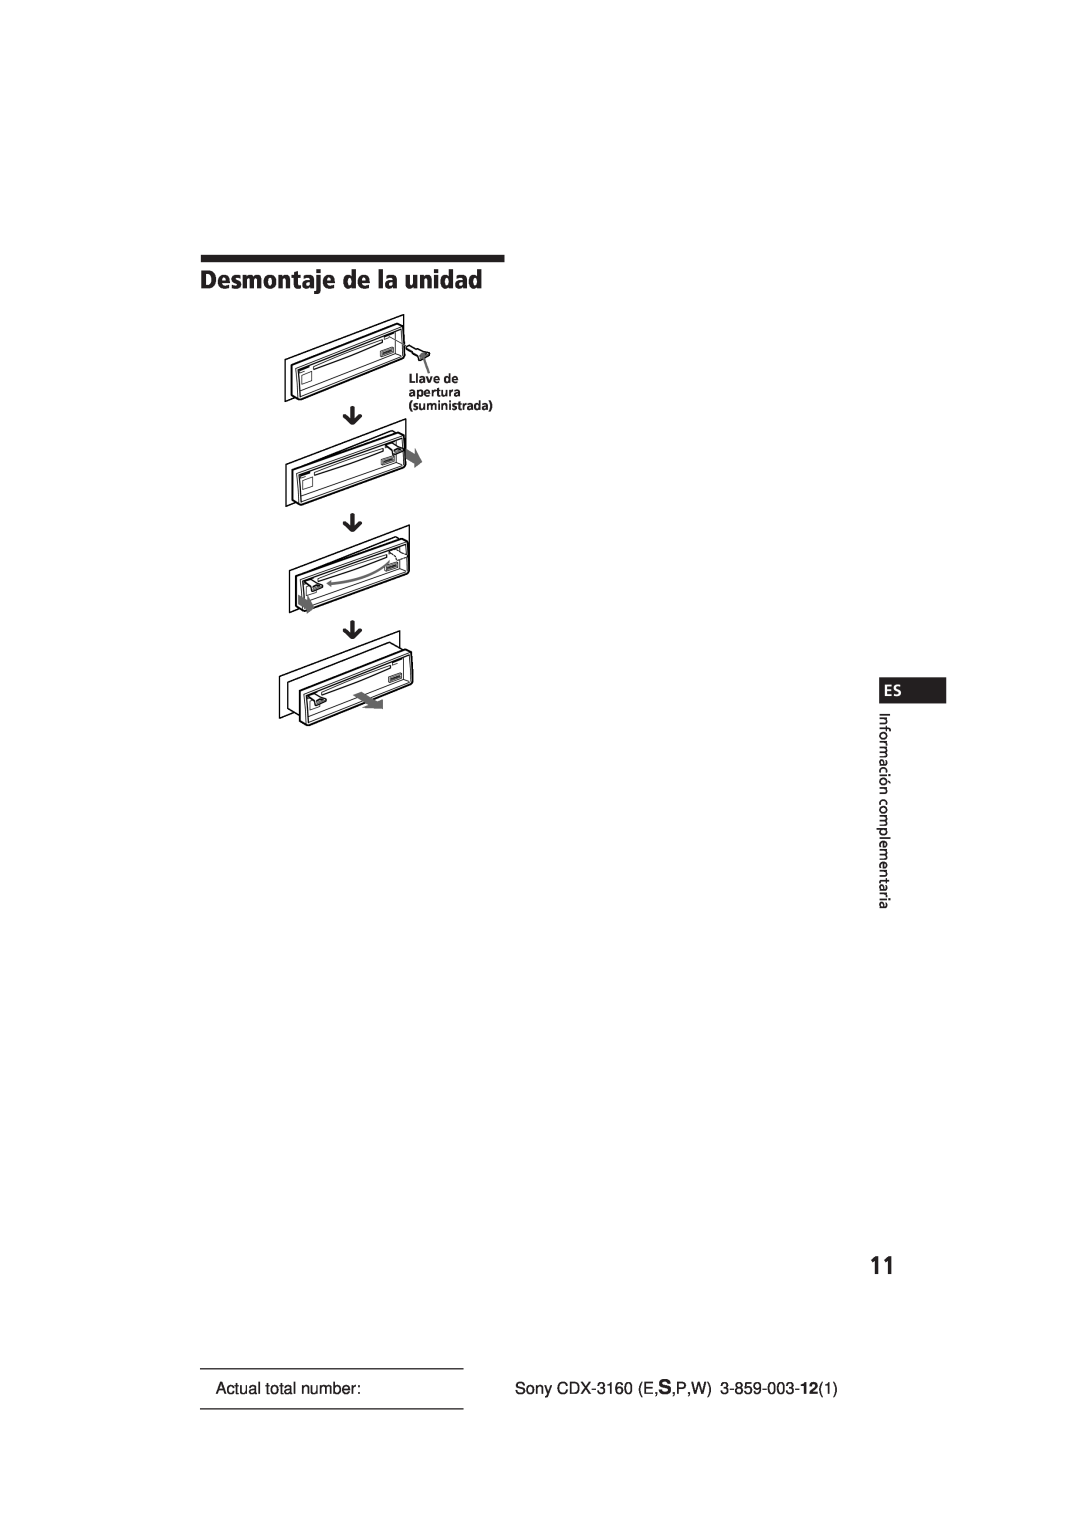 Sony manual Desmontaje de la unidad, Información complementaria, µ µ µ, Actual total number, Sony CDX-3160E,S,P,W 